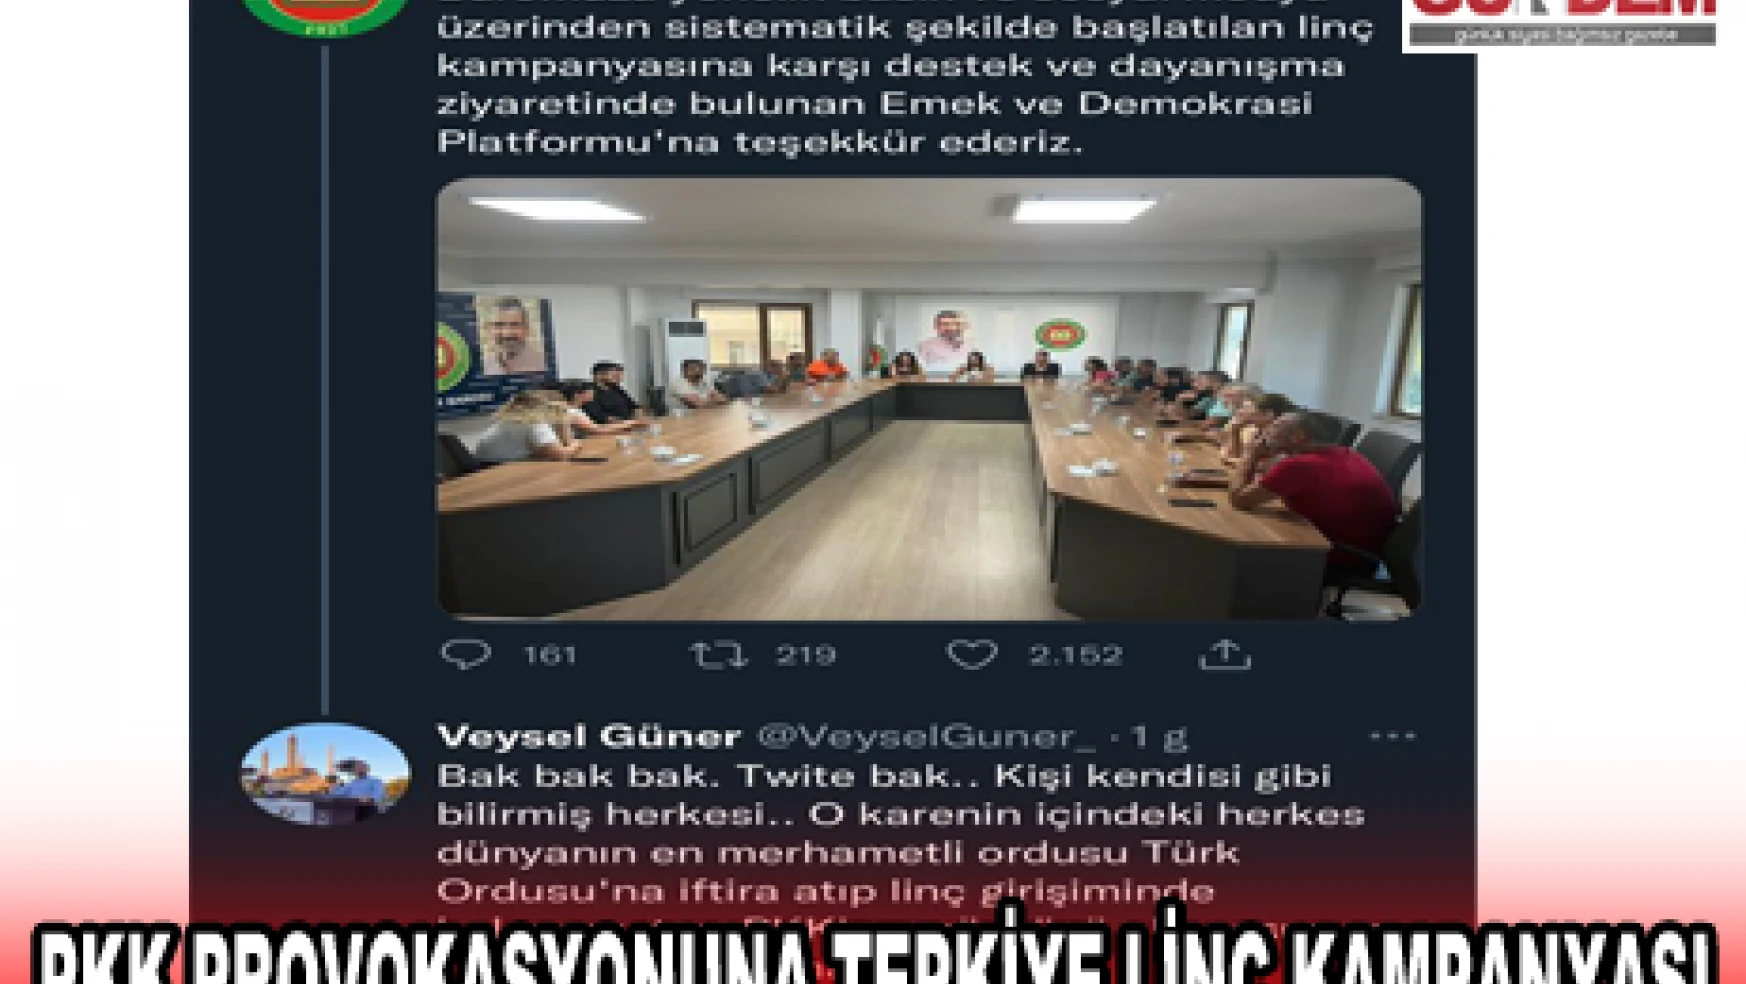 PKK PROVOKASYONUNA TEPKİYE LİNÇ KAMPANYASI